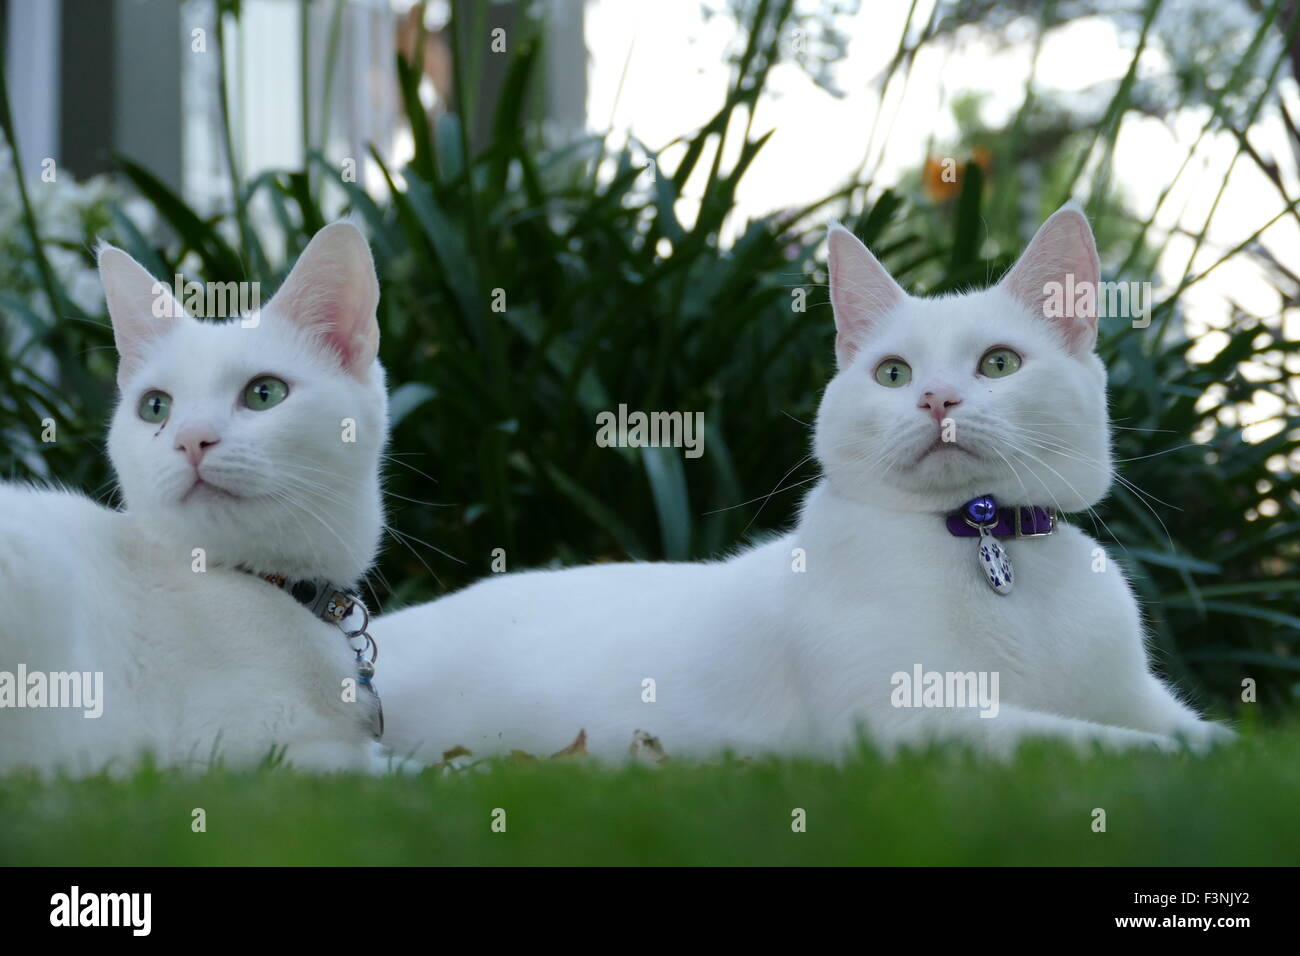 Gatti bianchi immagini e fotografie stock ad alta risoluzione - Alamy